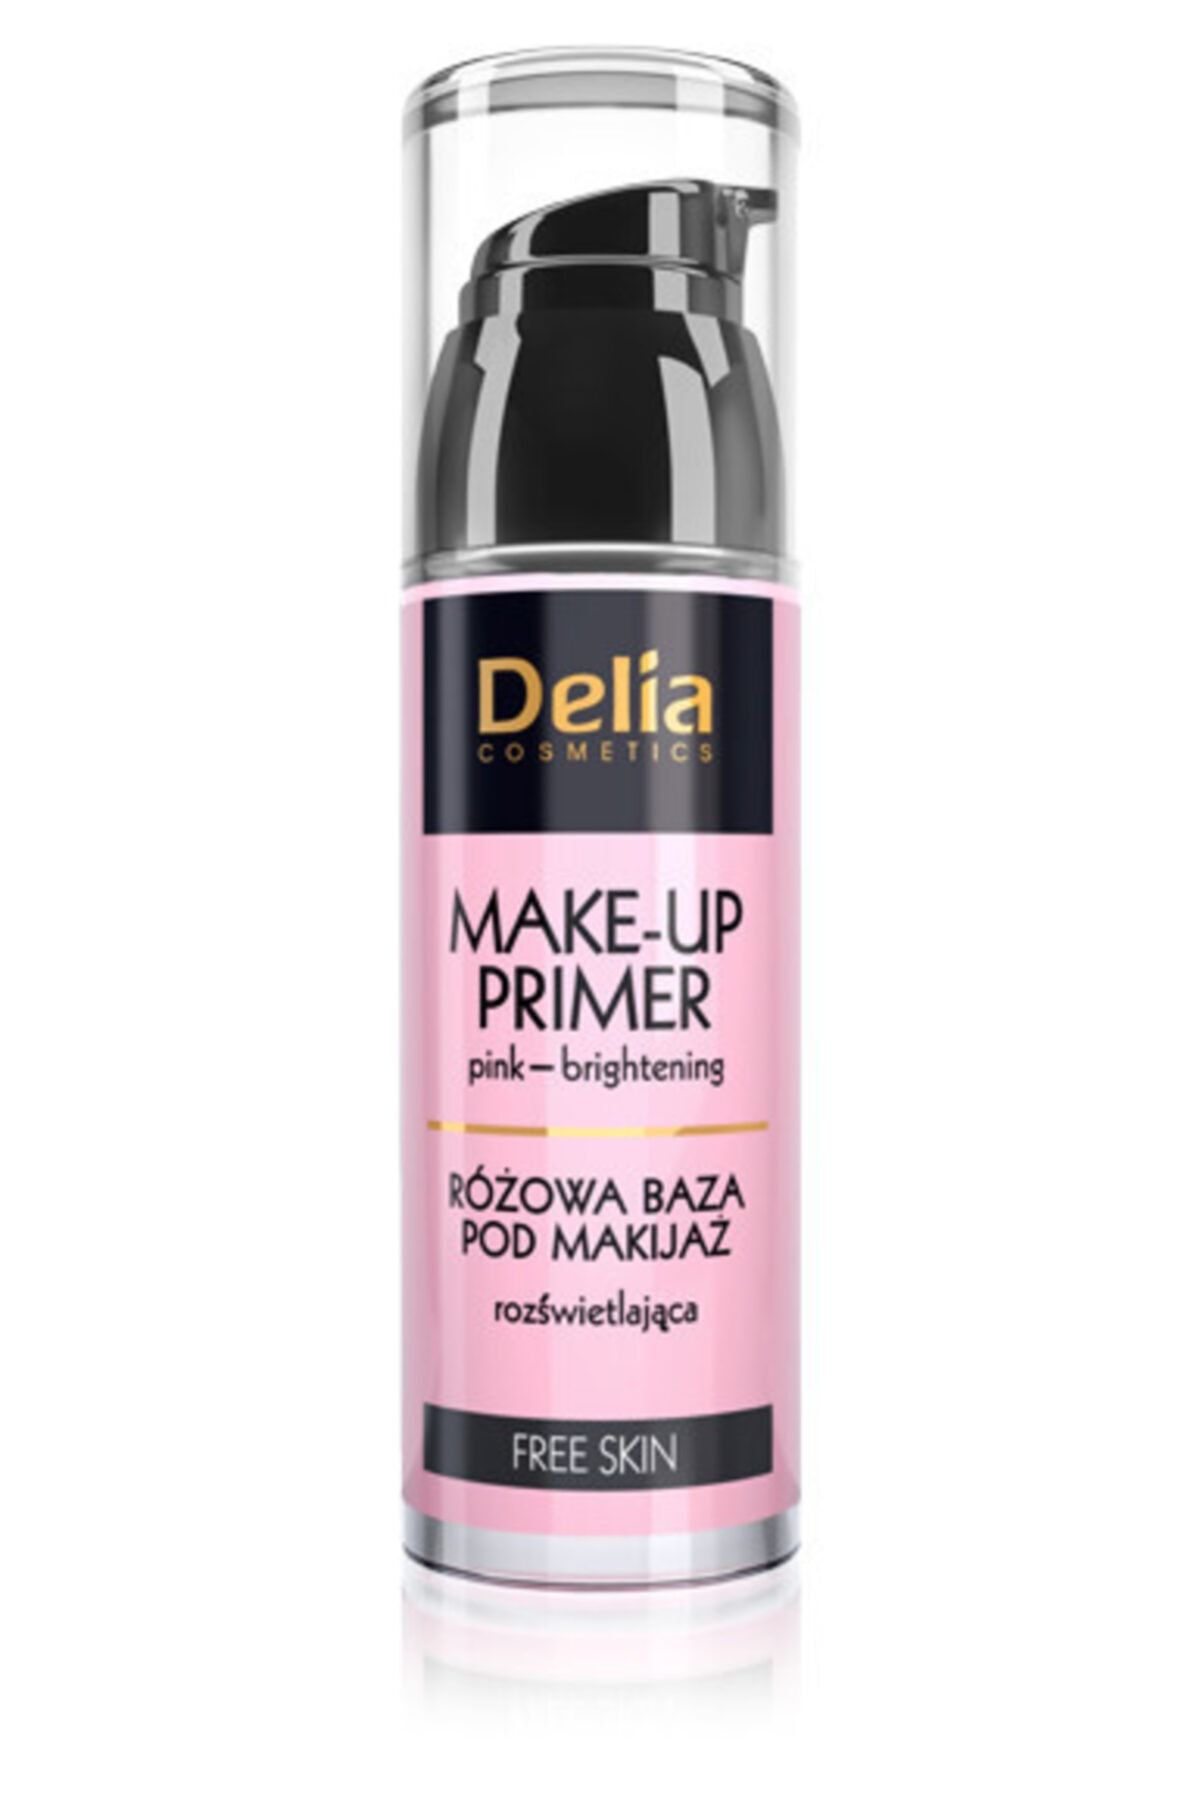 Delia косметика. Осветляющая база под макияж. Праймер для макияжа розовый. База под макияж Макс фактор.